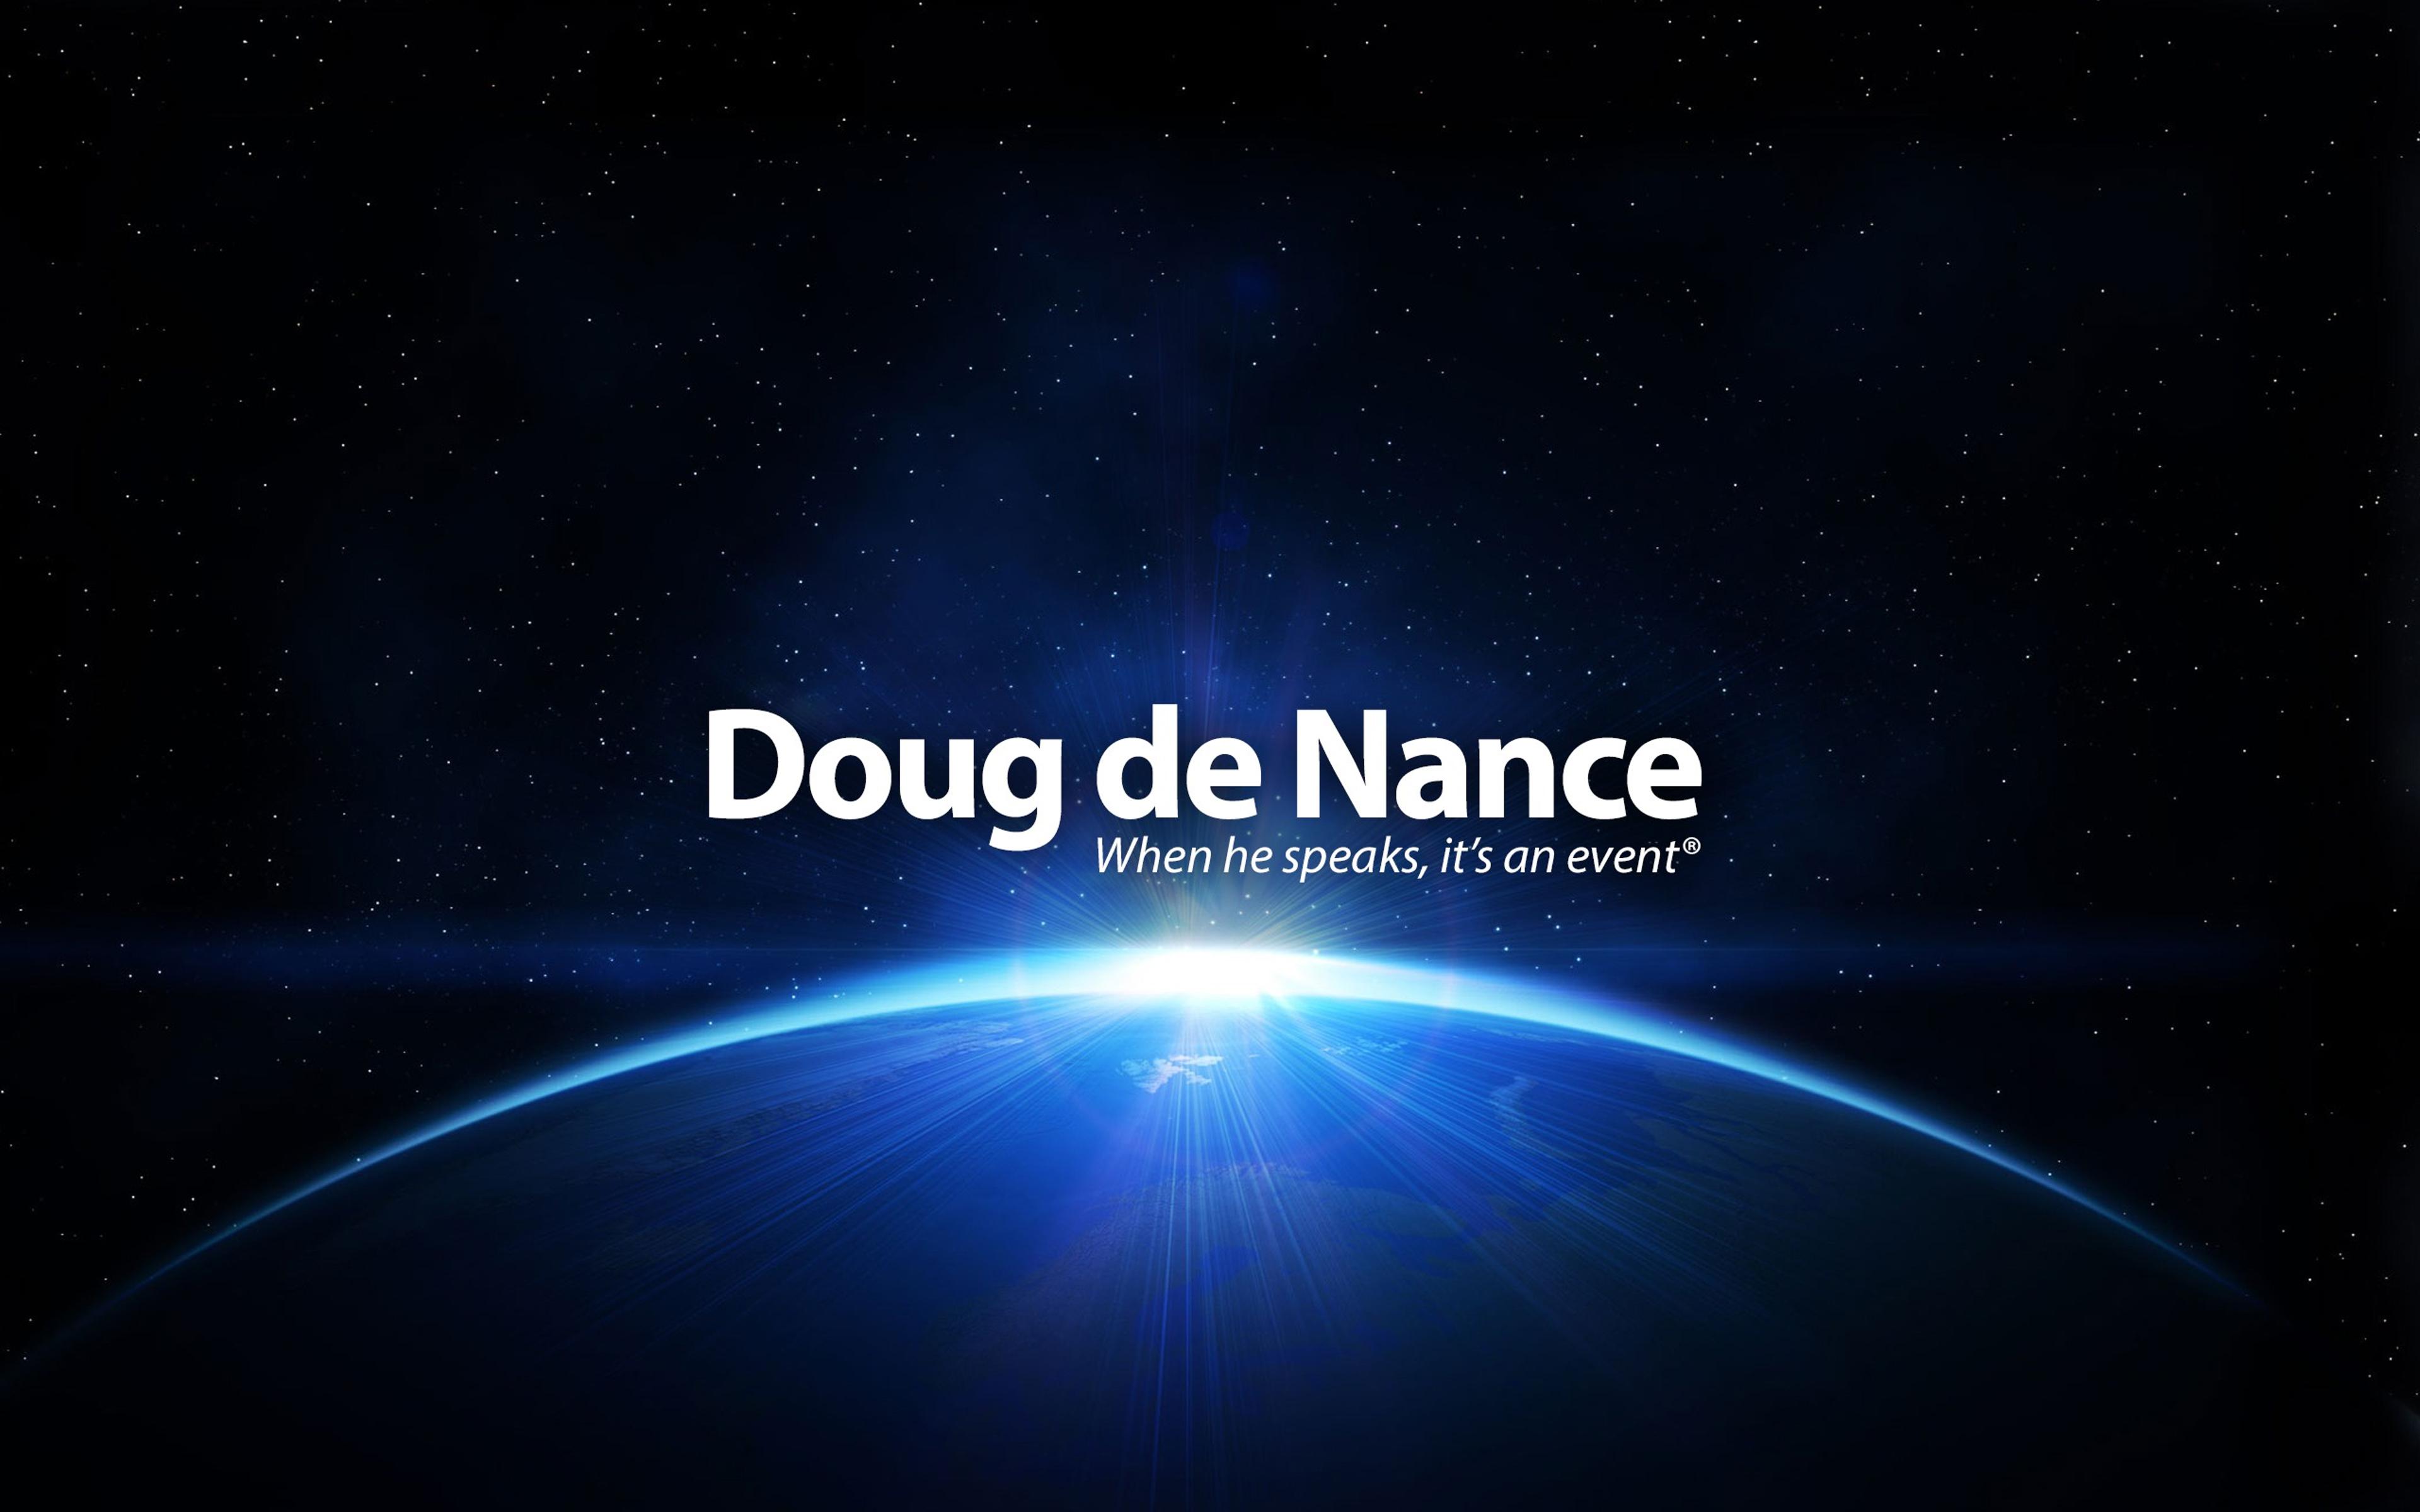 Doug de Nance VoiceOver